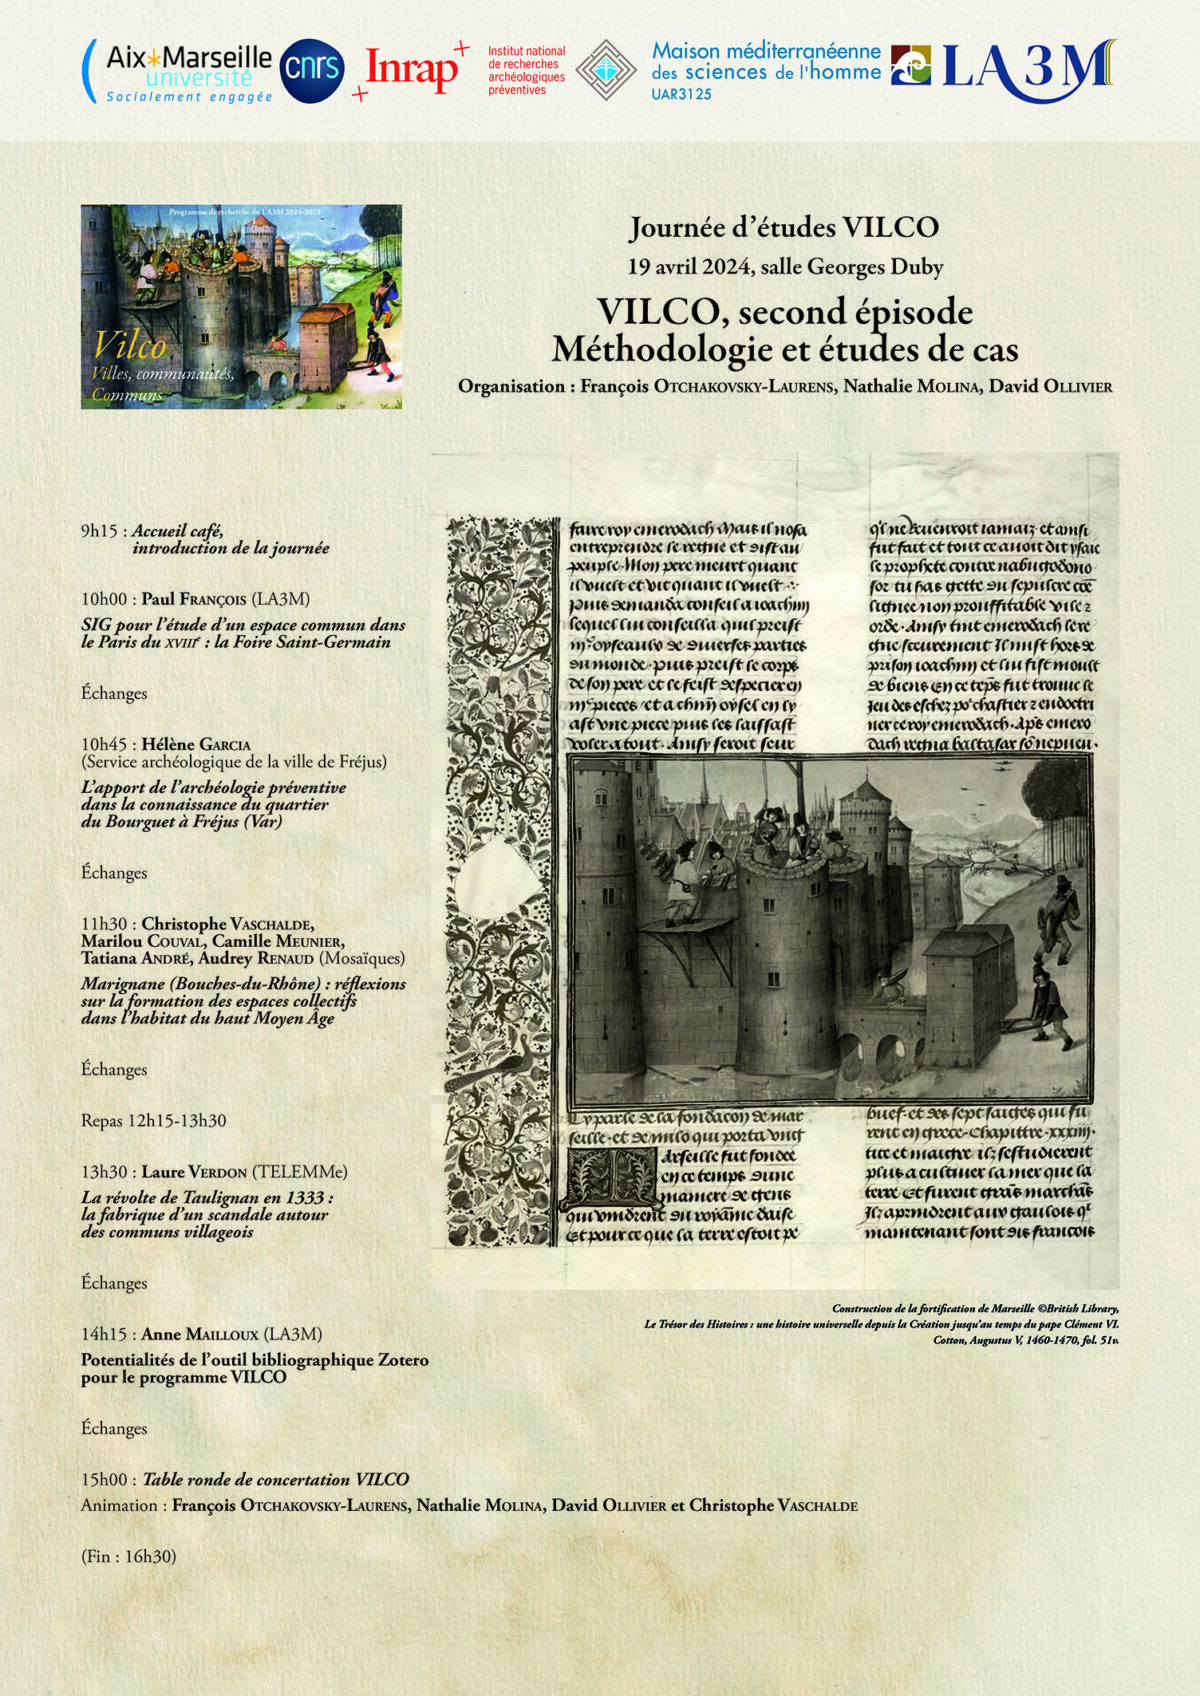 Journée d’études VILCO, second épisode – Méthodologie et études de cas